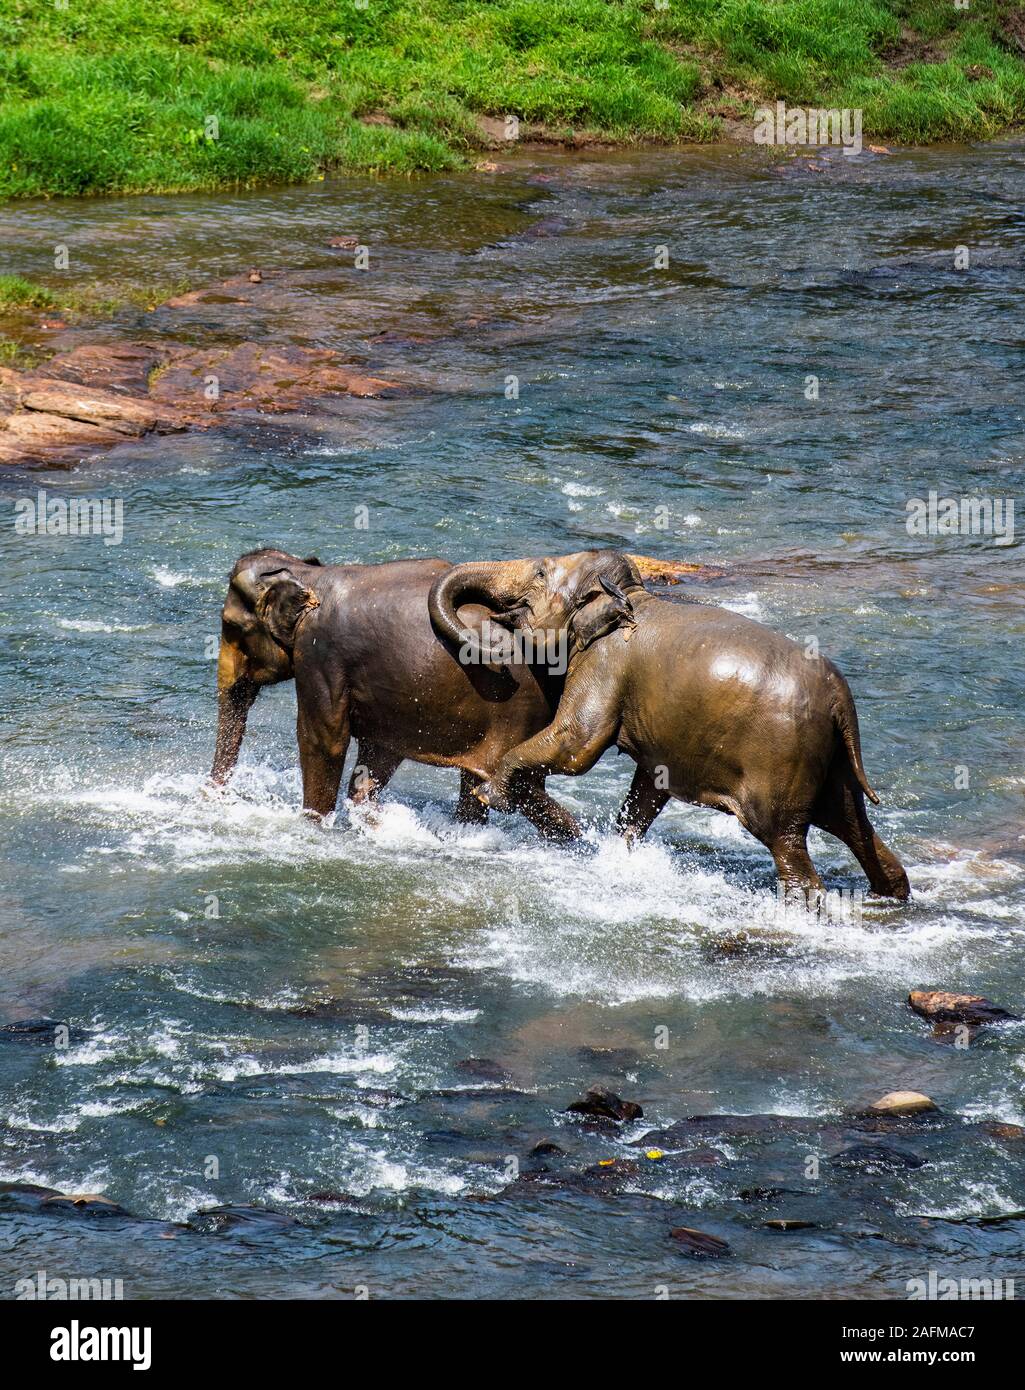 2 elephants in playful fight in Pinnawala / Sri Lanka Stock Photo